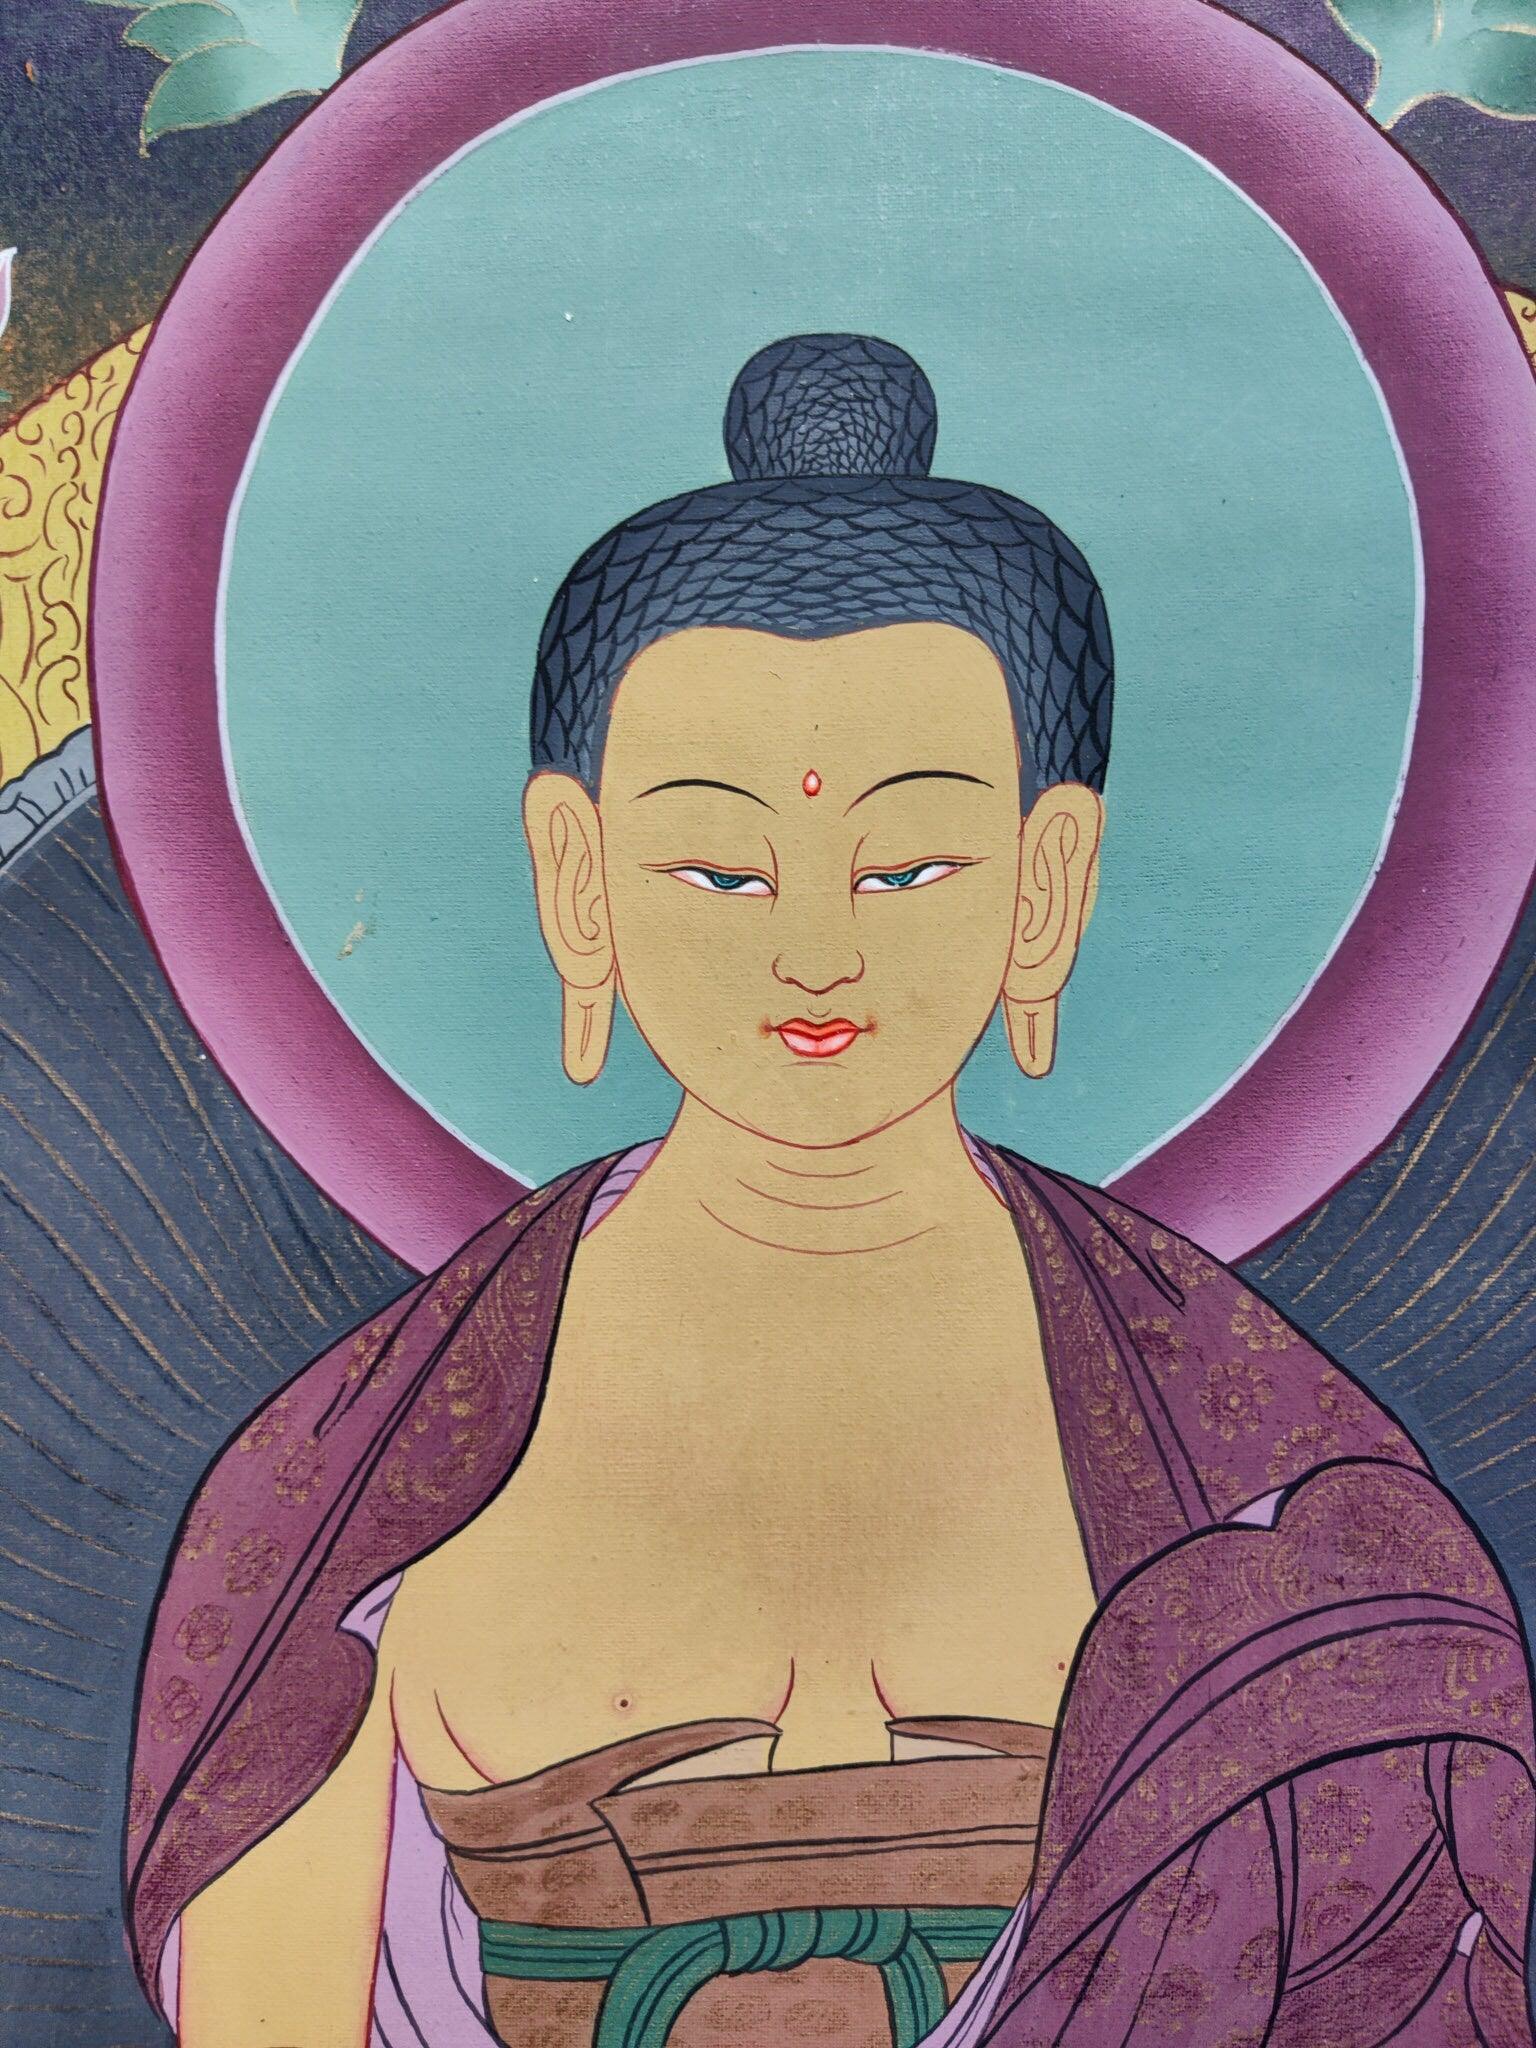 Shakyamuni Buddha from Himalayas